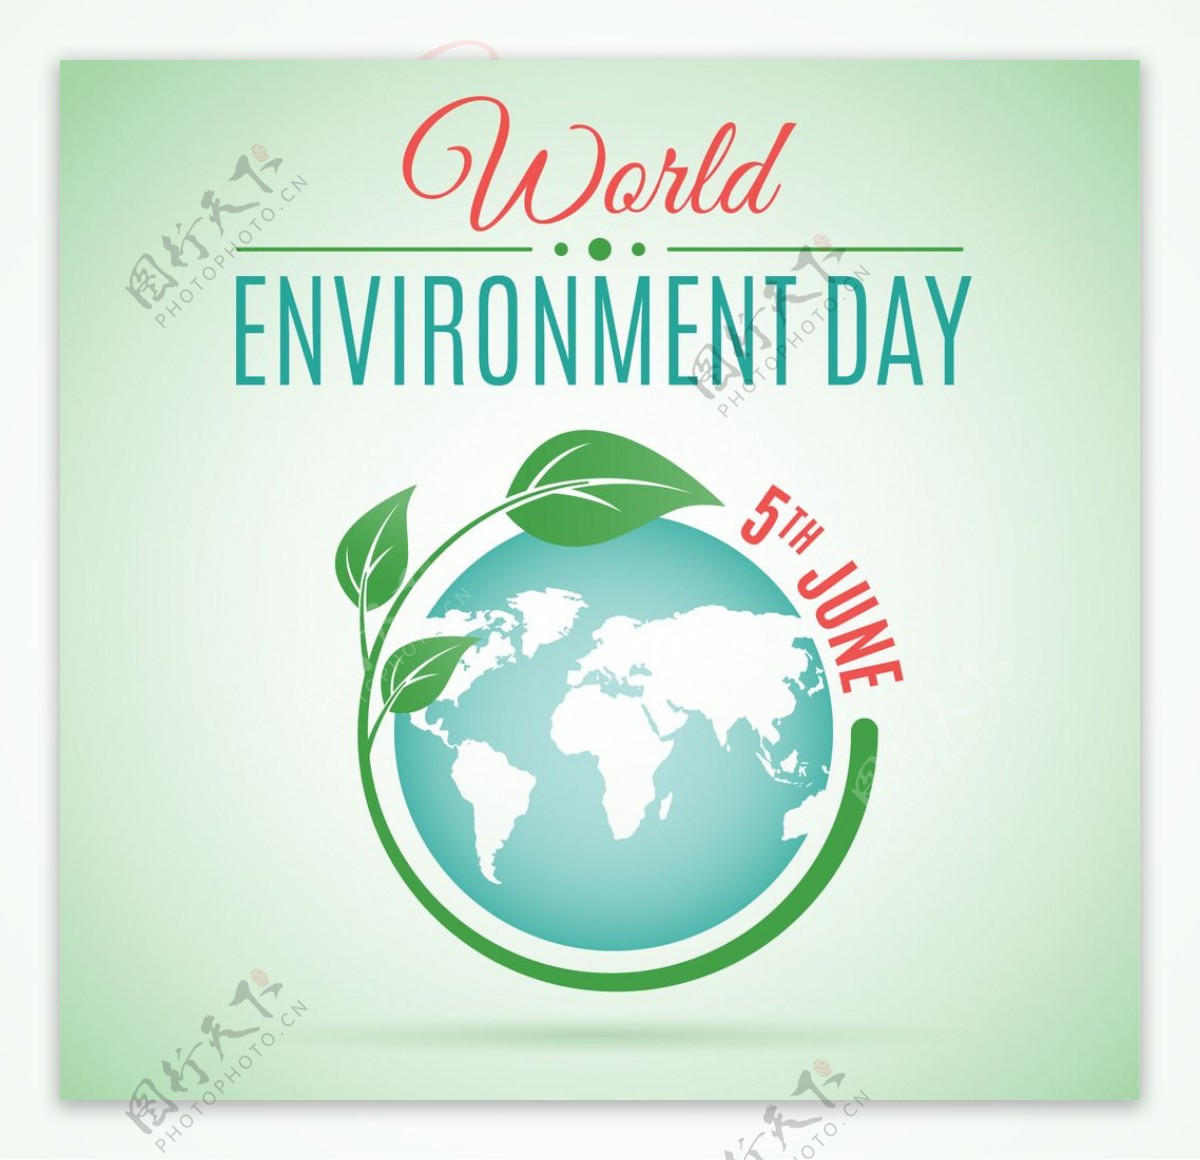 世界环境日背景